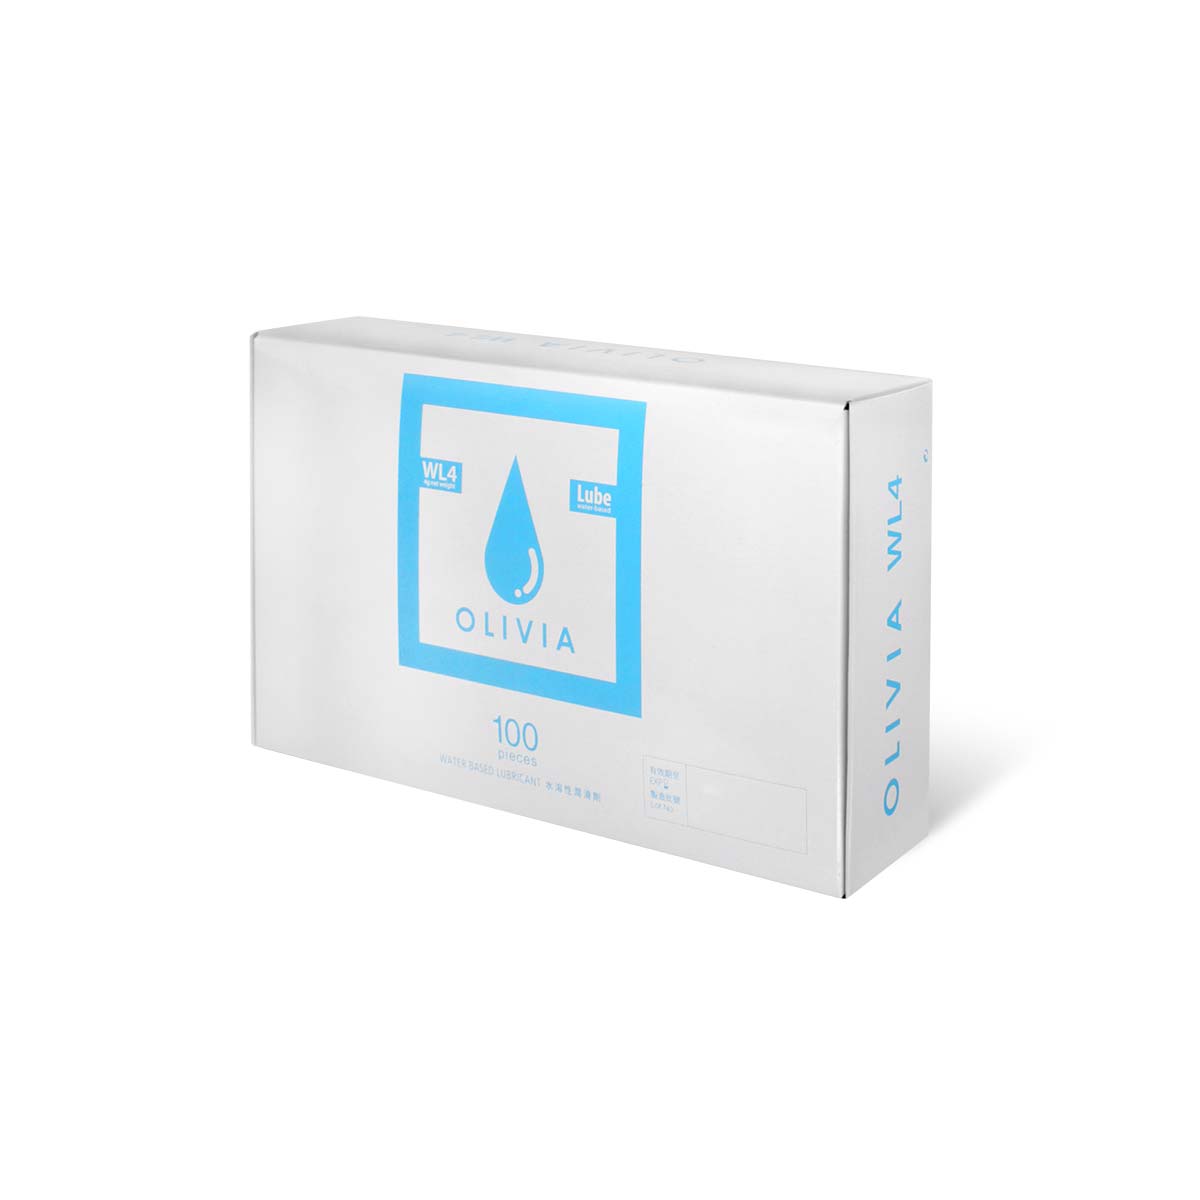 奥莉维亚 WL4 旅行小包装 100 片装 水基润滑剂-p_1